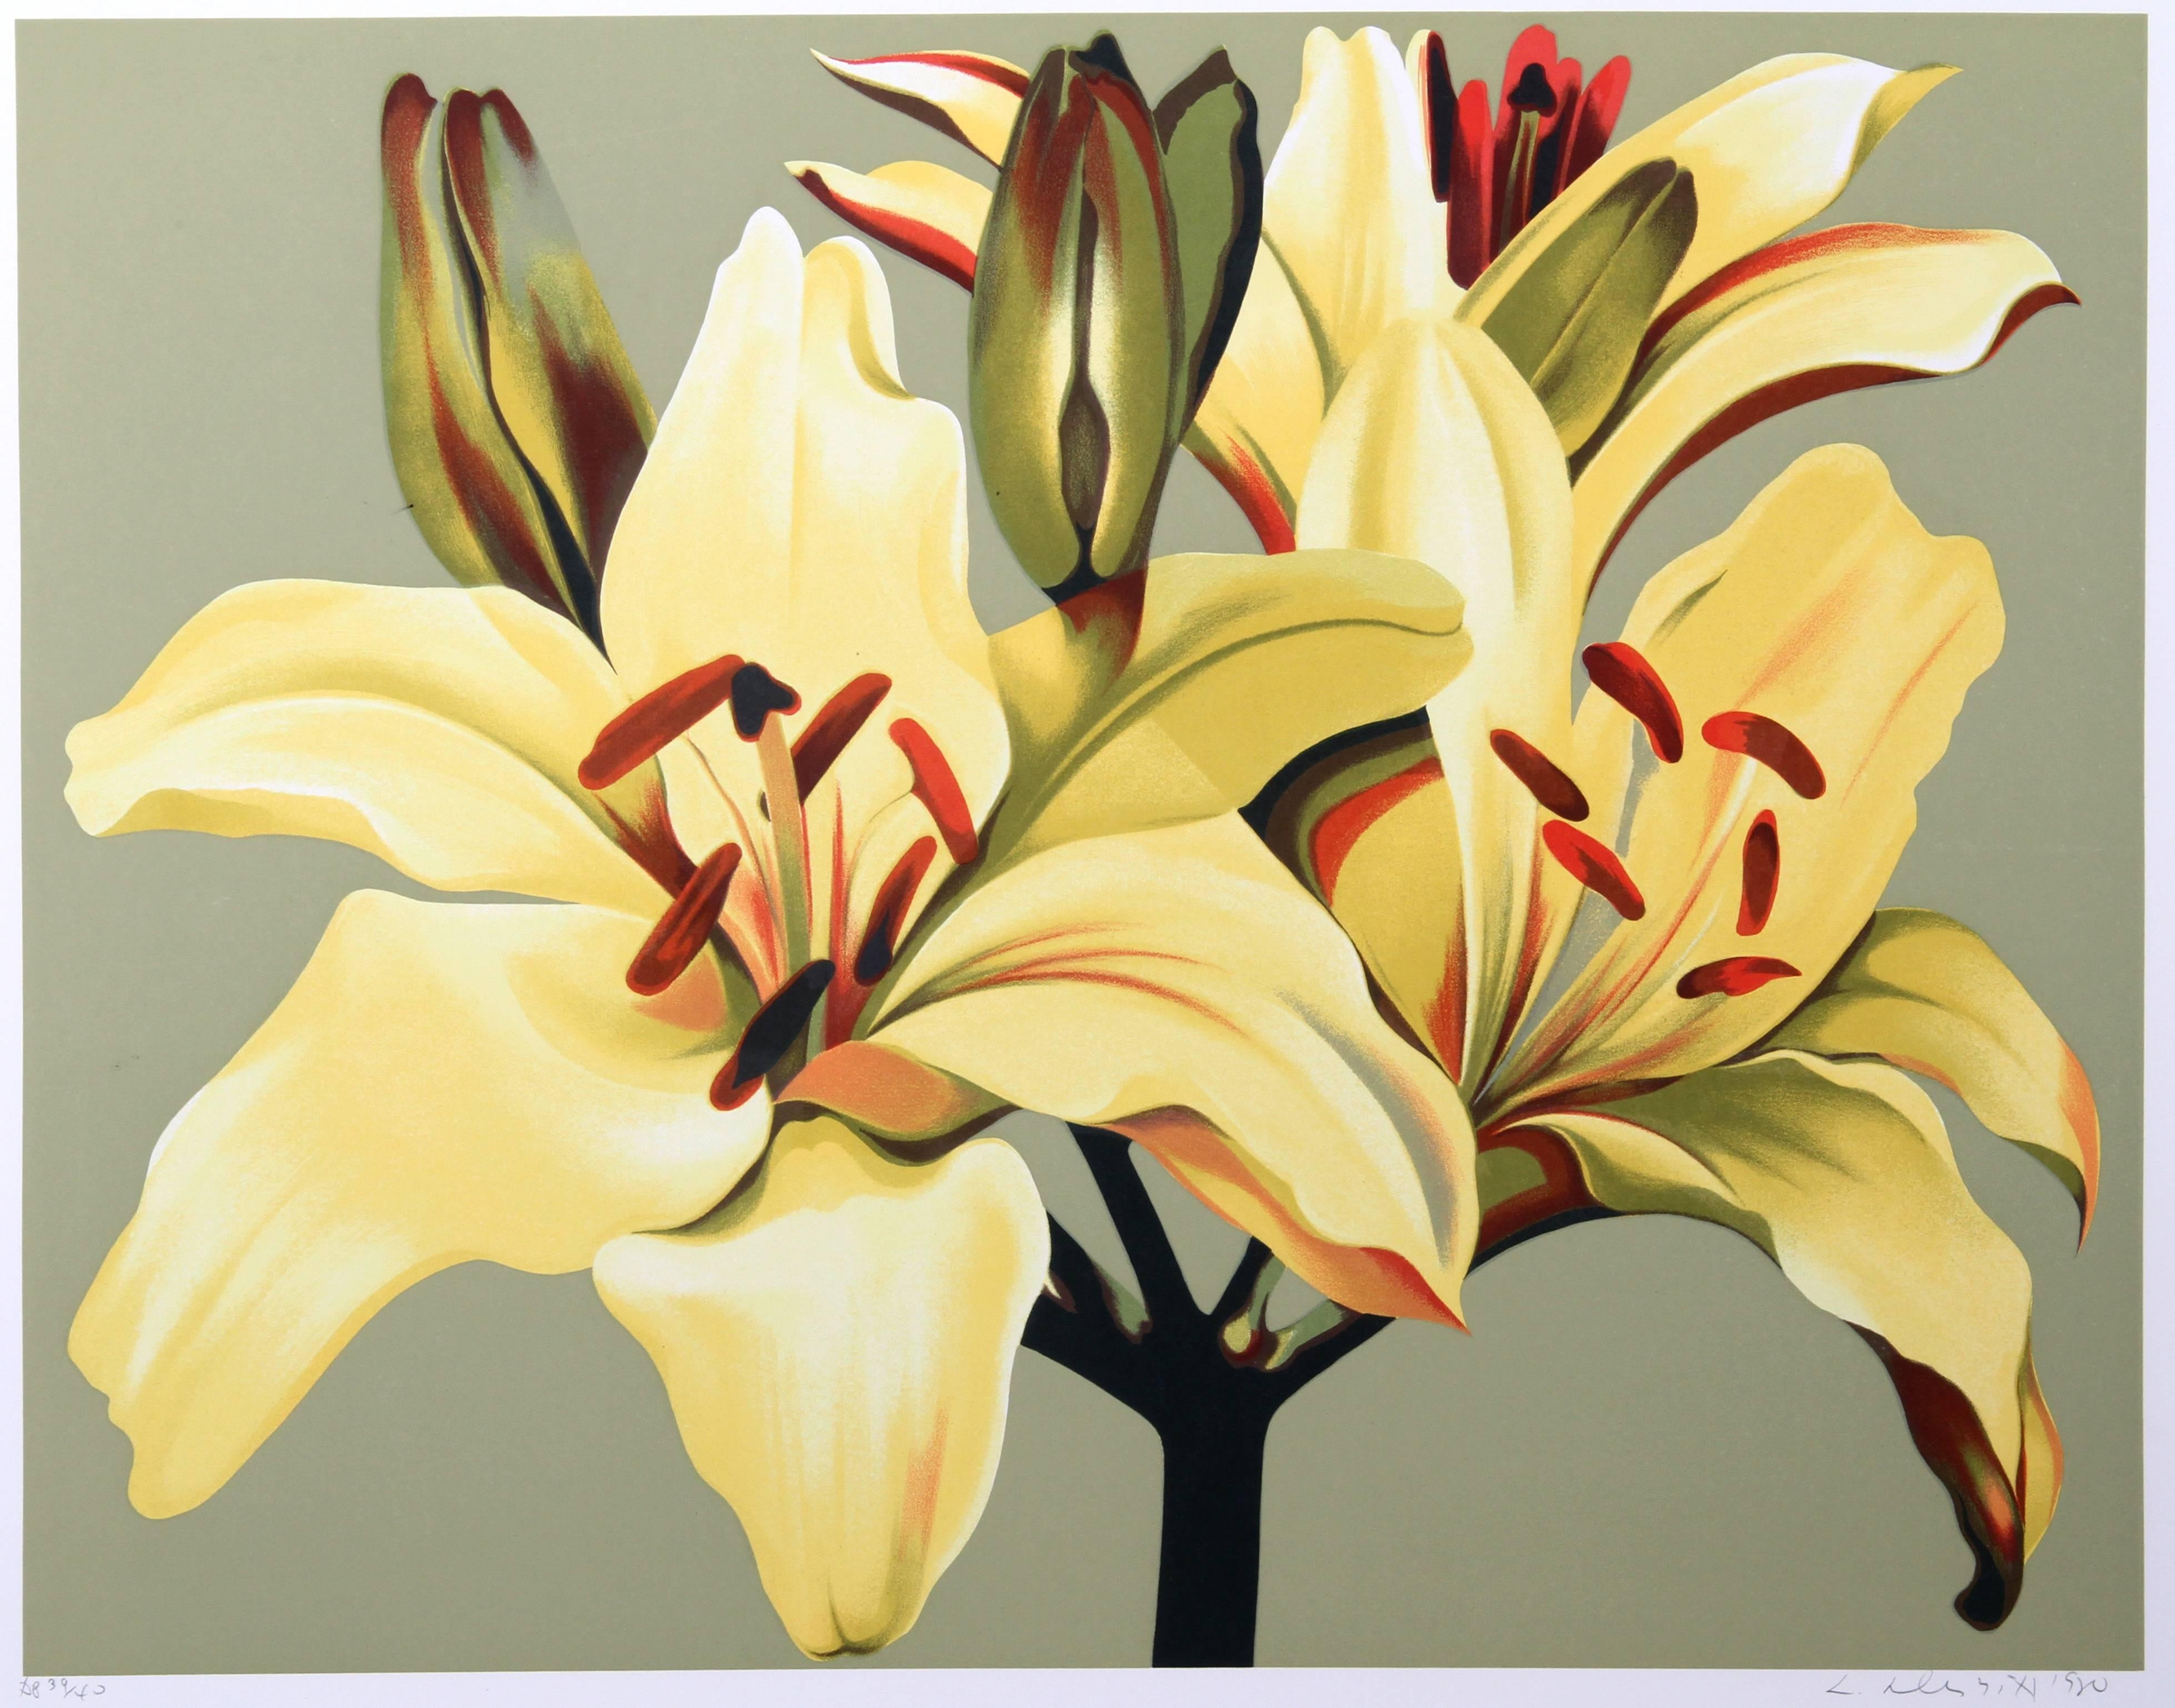 Künstler: Lowell Blair Nesbitt, Amerikaner (1933 - 1993)
Titel: Gelbe Lilien auf Grün
Jahr: 1980
Medium: Siebdruck, signiert und nummeriert mit Bleistift
Auflage: 200, AP 35
Bildgröße: 30 x 38 Zoll
Größe: 38 Zoll x 46 Zoll (96,52 cm x 116,84 cm)